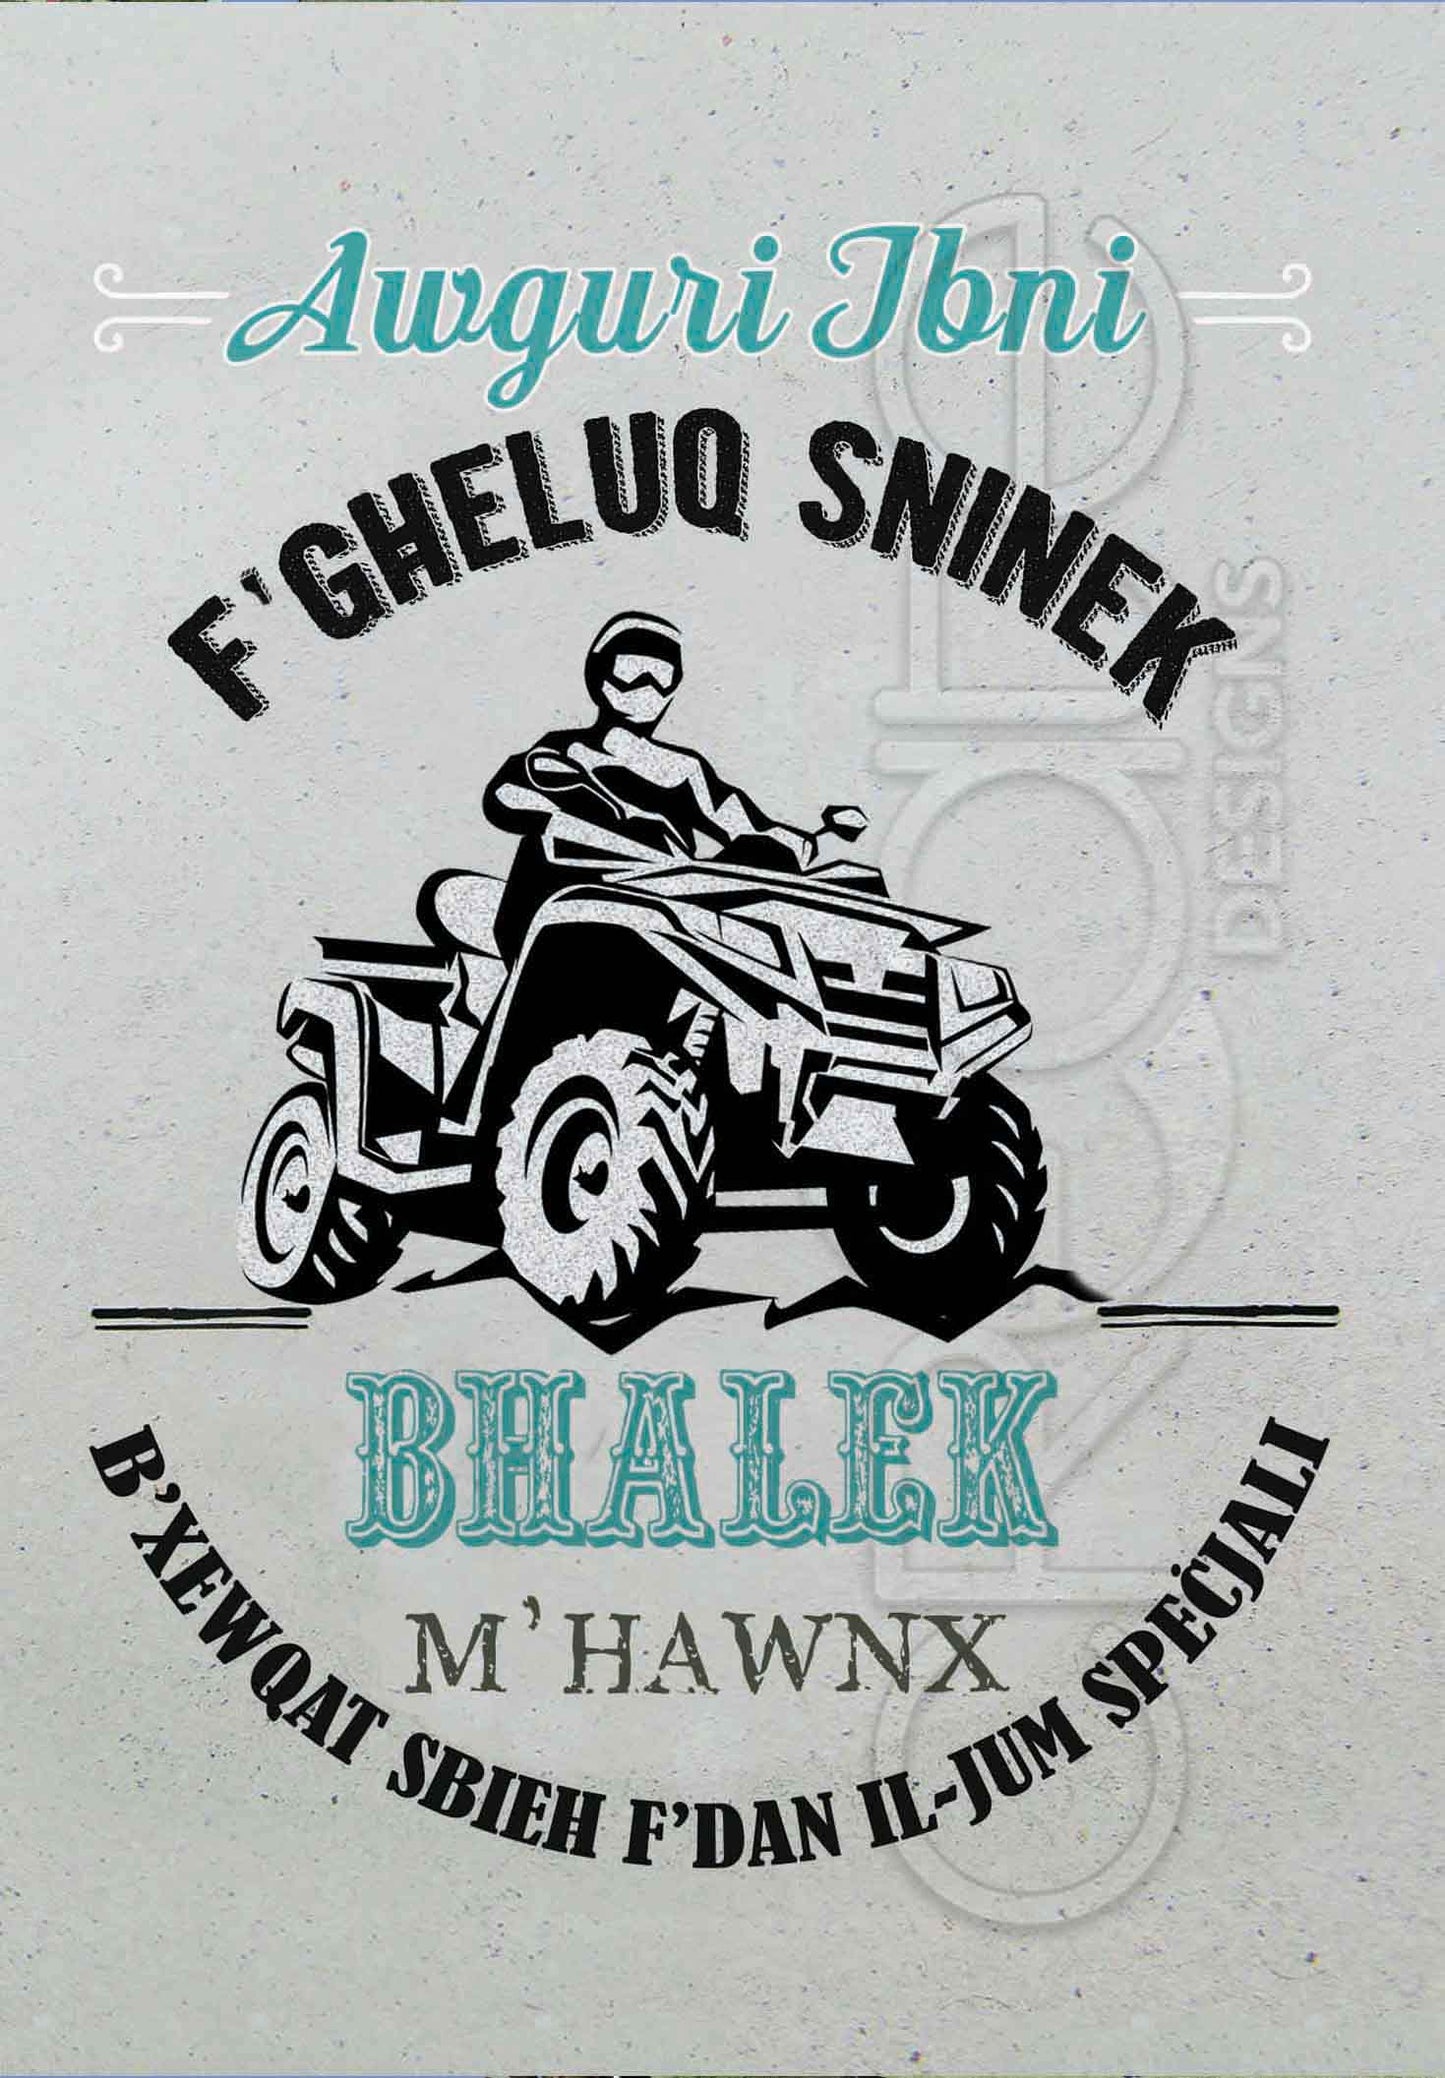 Kartolina għat-Tifel tiegħek f'għeluq sninu bil-quad bike